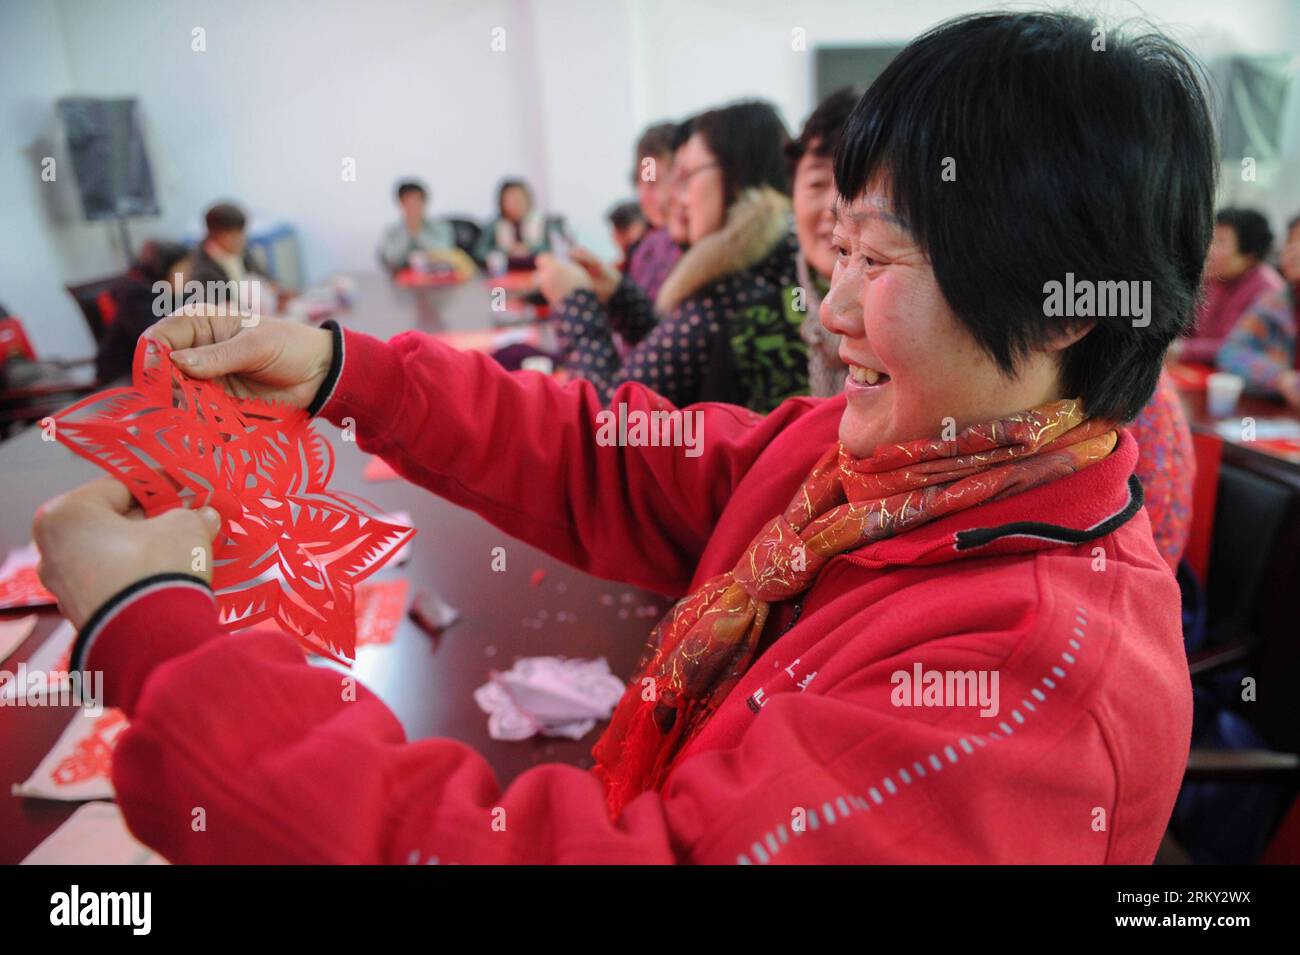 Bildnummer : 59129967 Datum : 24.01.2013 Copyright : imago/Xinhua (130124) -- HEFEI, 24 janvier 2013 (Xinhua) -- Une femme montre le travail de découpe de papier qu'elle vient de terminer à Hefei, capitale de la province d'Anhui de l'est de la Chine, le 24 janvier 2013. Une activité a eu lieu ici à la communauté Daoxiangcun, faisant la promotion des arts folkloriques traditionnels pour le prochain festival du printemps. (Xinhua/du Yu) (xzj) CHINA-ANHUI-HEFEI-SPRING FESTIVAL-FOLK ARTS (CN) PUBLICATIONxNOTxINxCHN Gesellschaft Kultur tradition Frühlingsfest Deko Papierschnitt x0x xst 2013 quer 59129967 Date 24 01 2013 Copyright Imago XINHUA Hefei Jan 24 2013 XI Banque D'Images